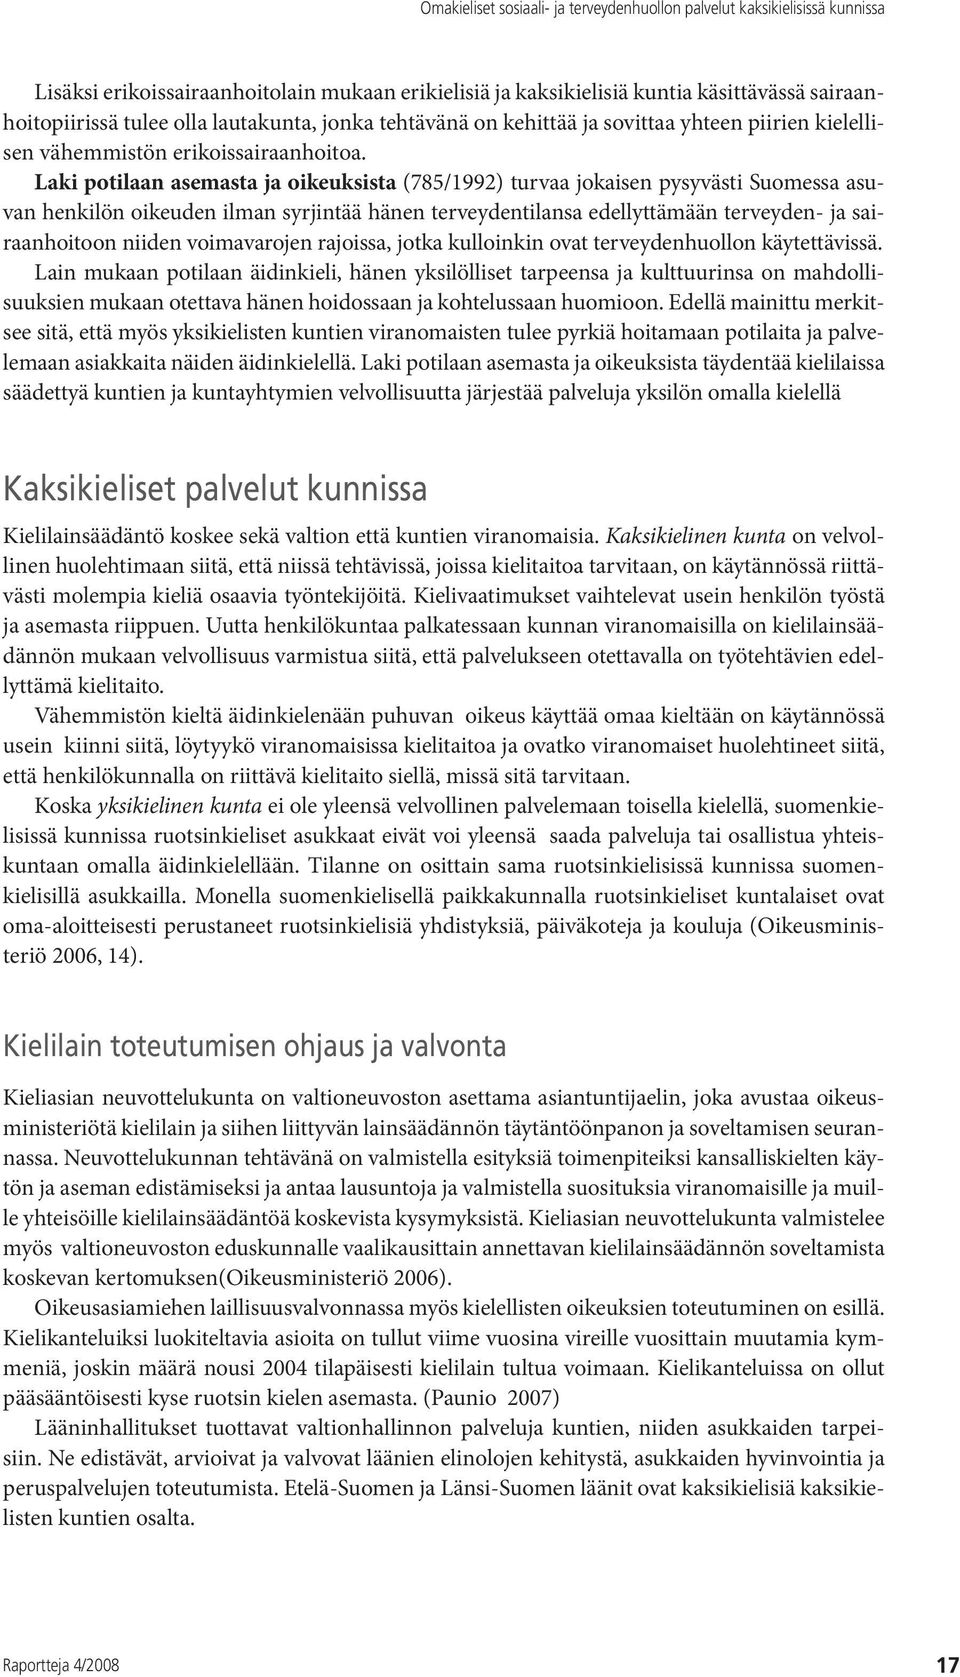 Laki potilaan asemasta ja oikeuksista (785/1992) turvaa jokaisen pysyvästi Suomessa asuvan henkilön oikeuden ilman syrjintää hänen terveydentilansa edellyttämään terveyden- ja sairaanhoitoon niiden